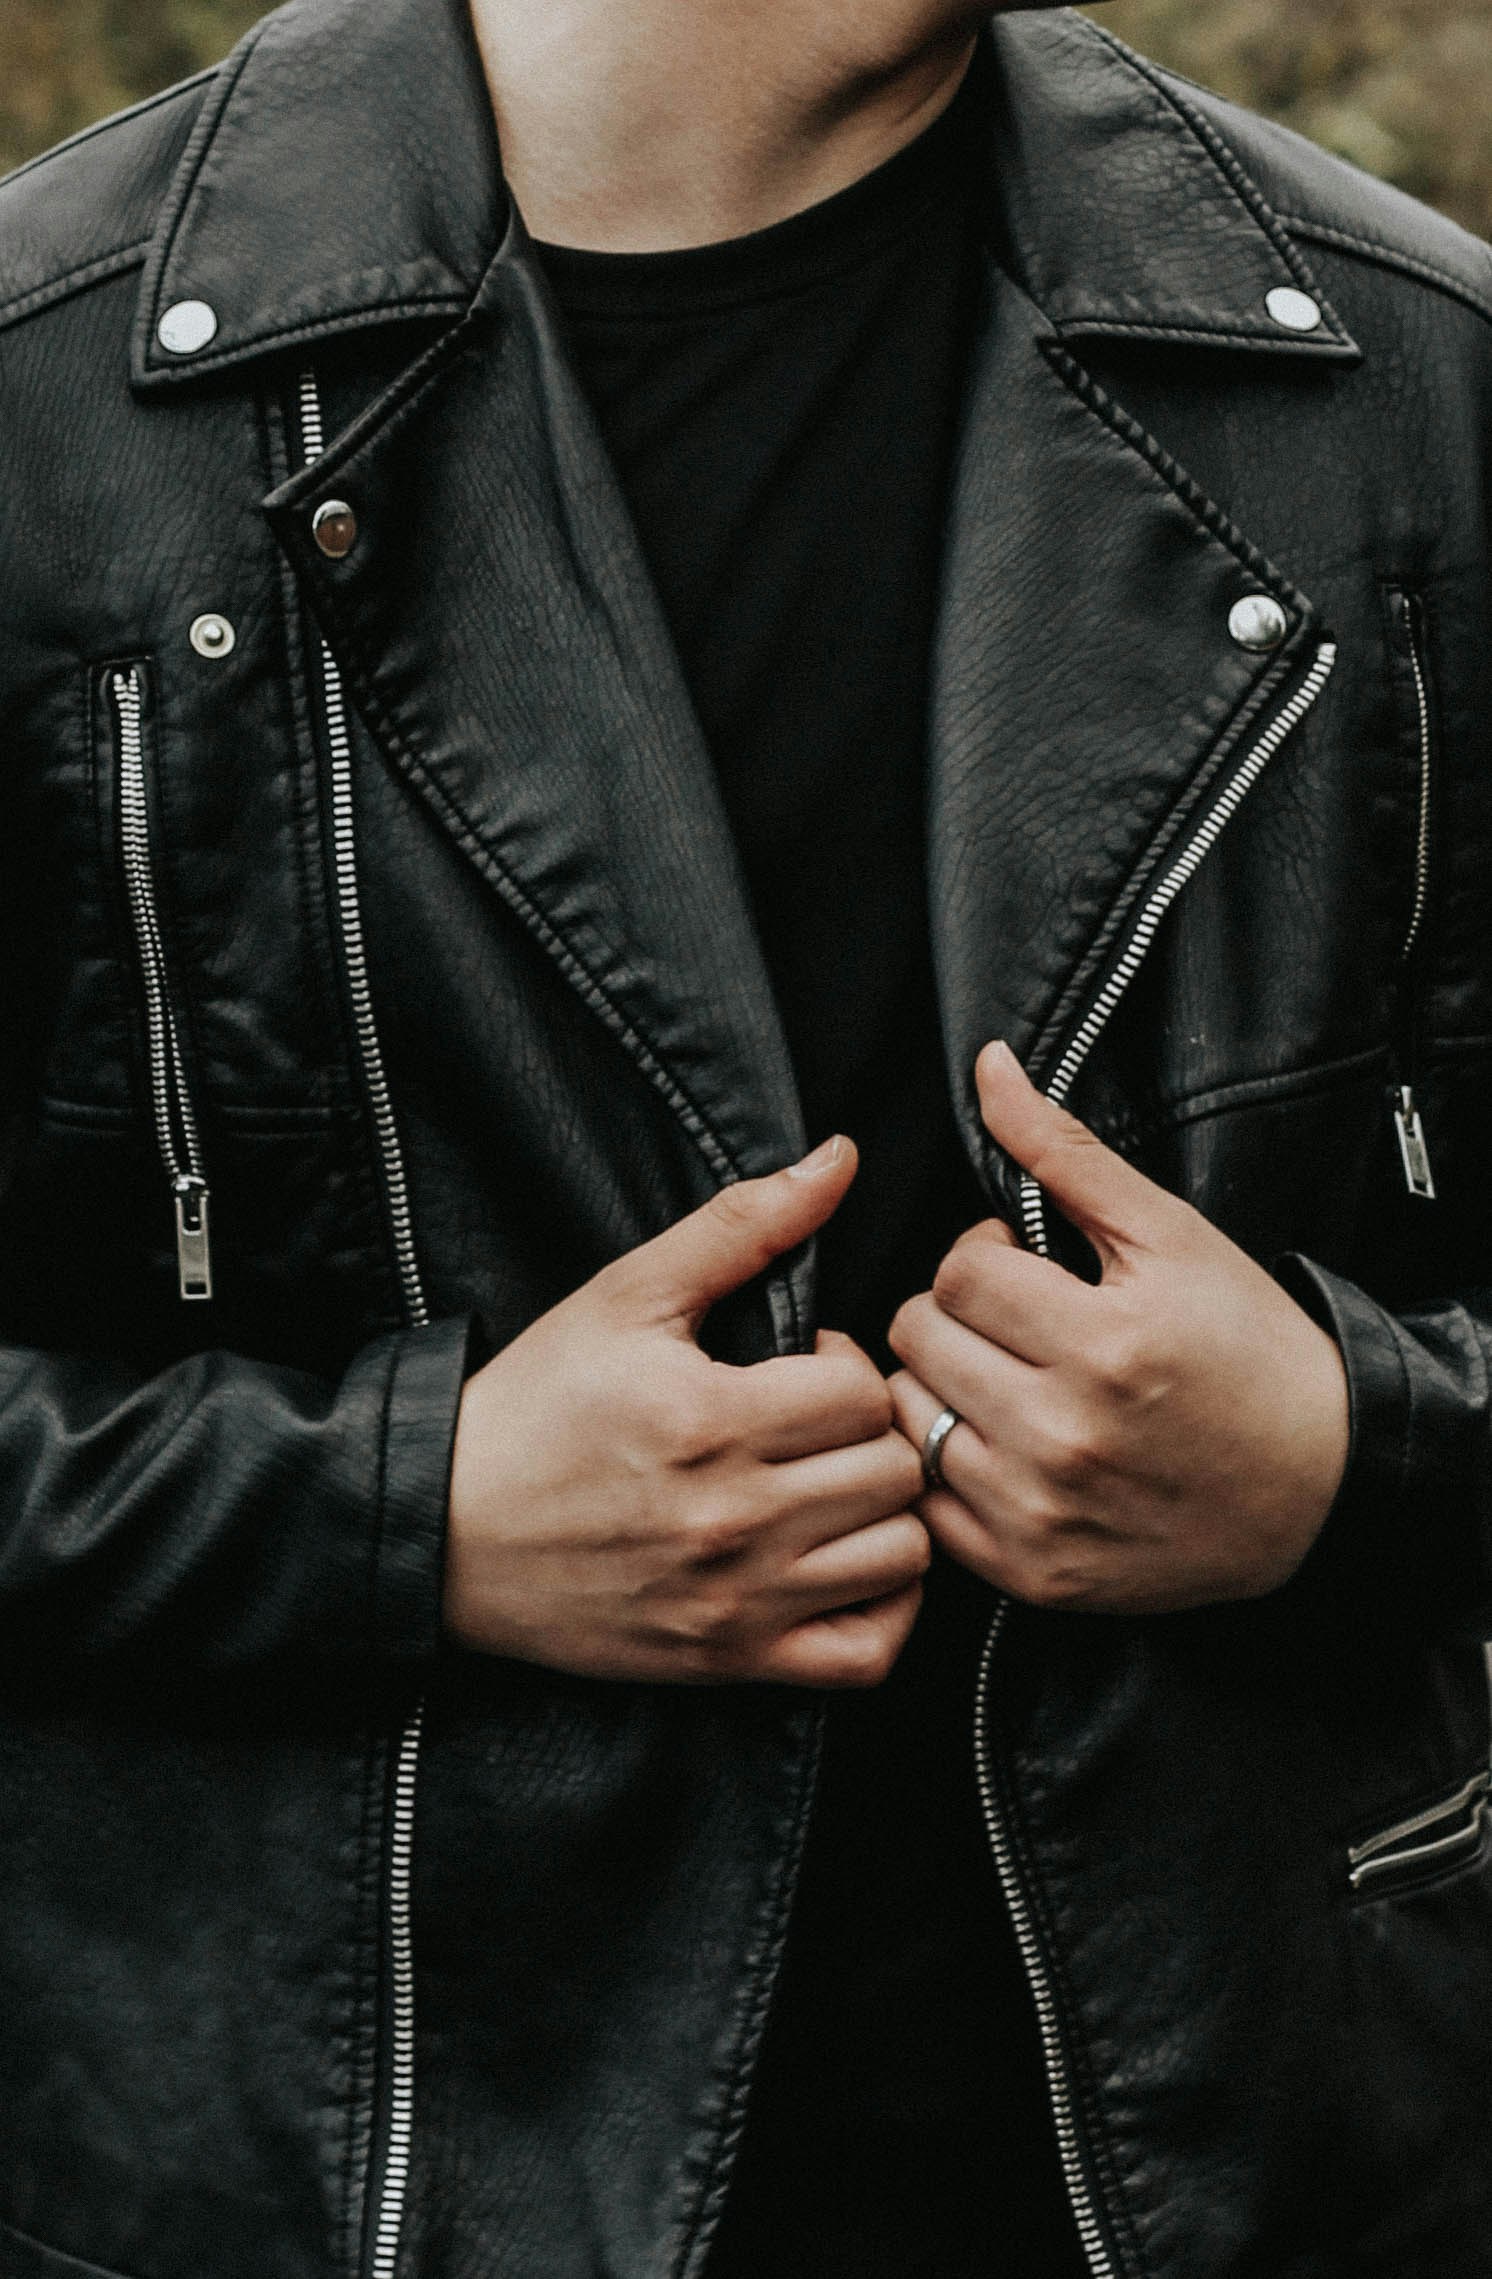 Un homme portant une veste noire | Source : Unsplash